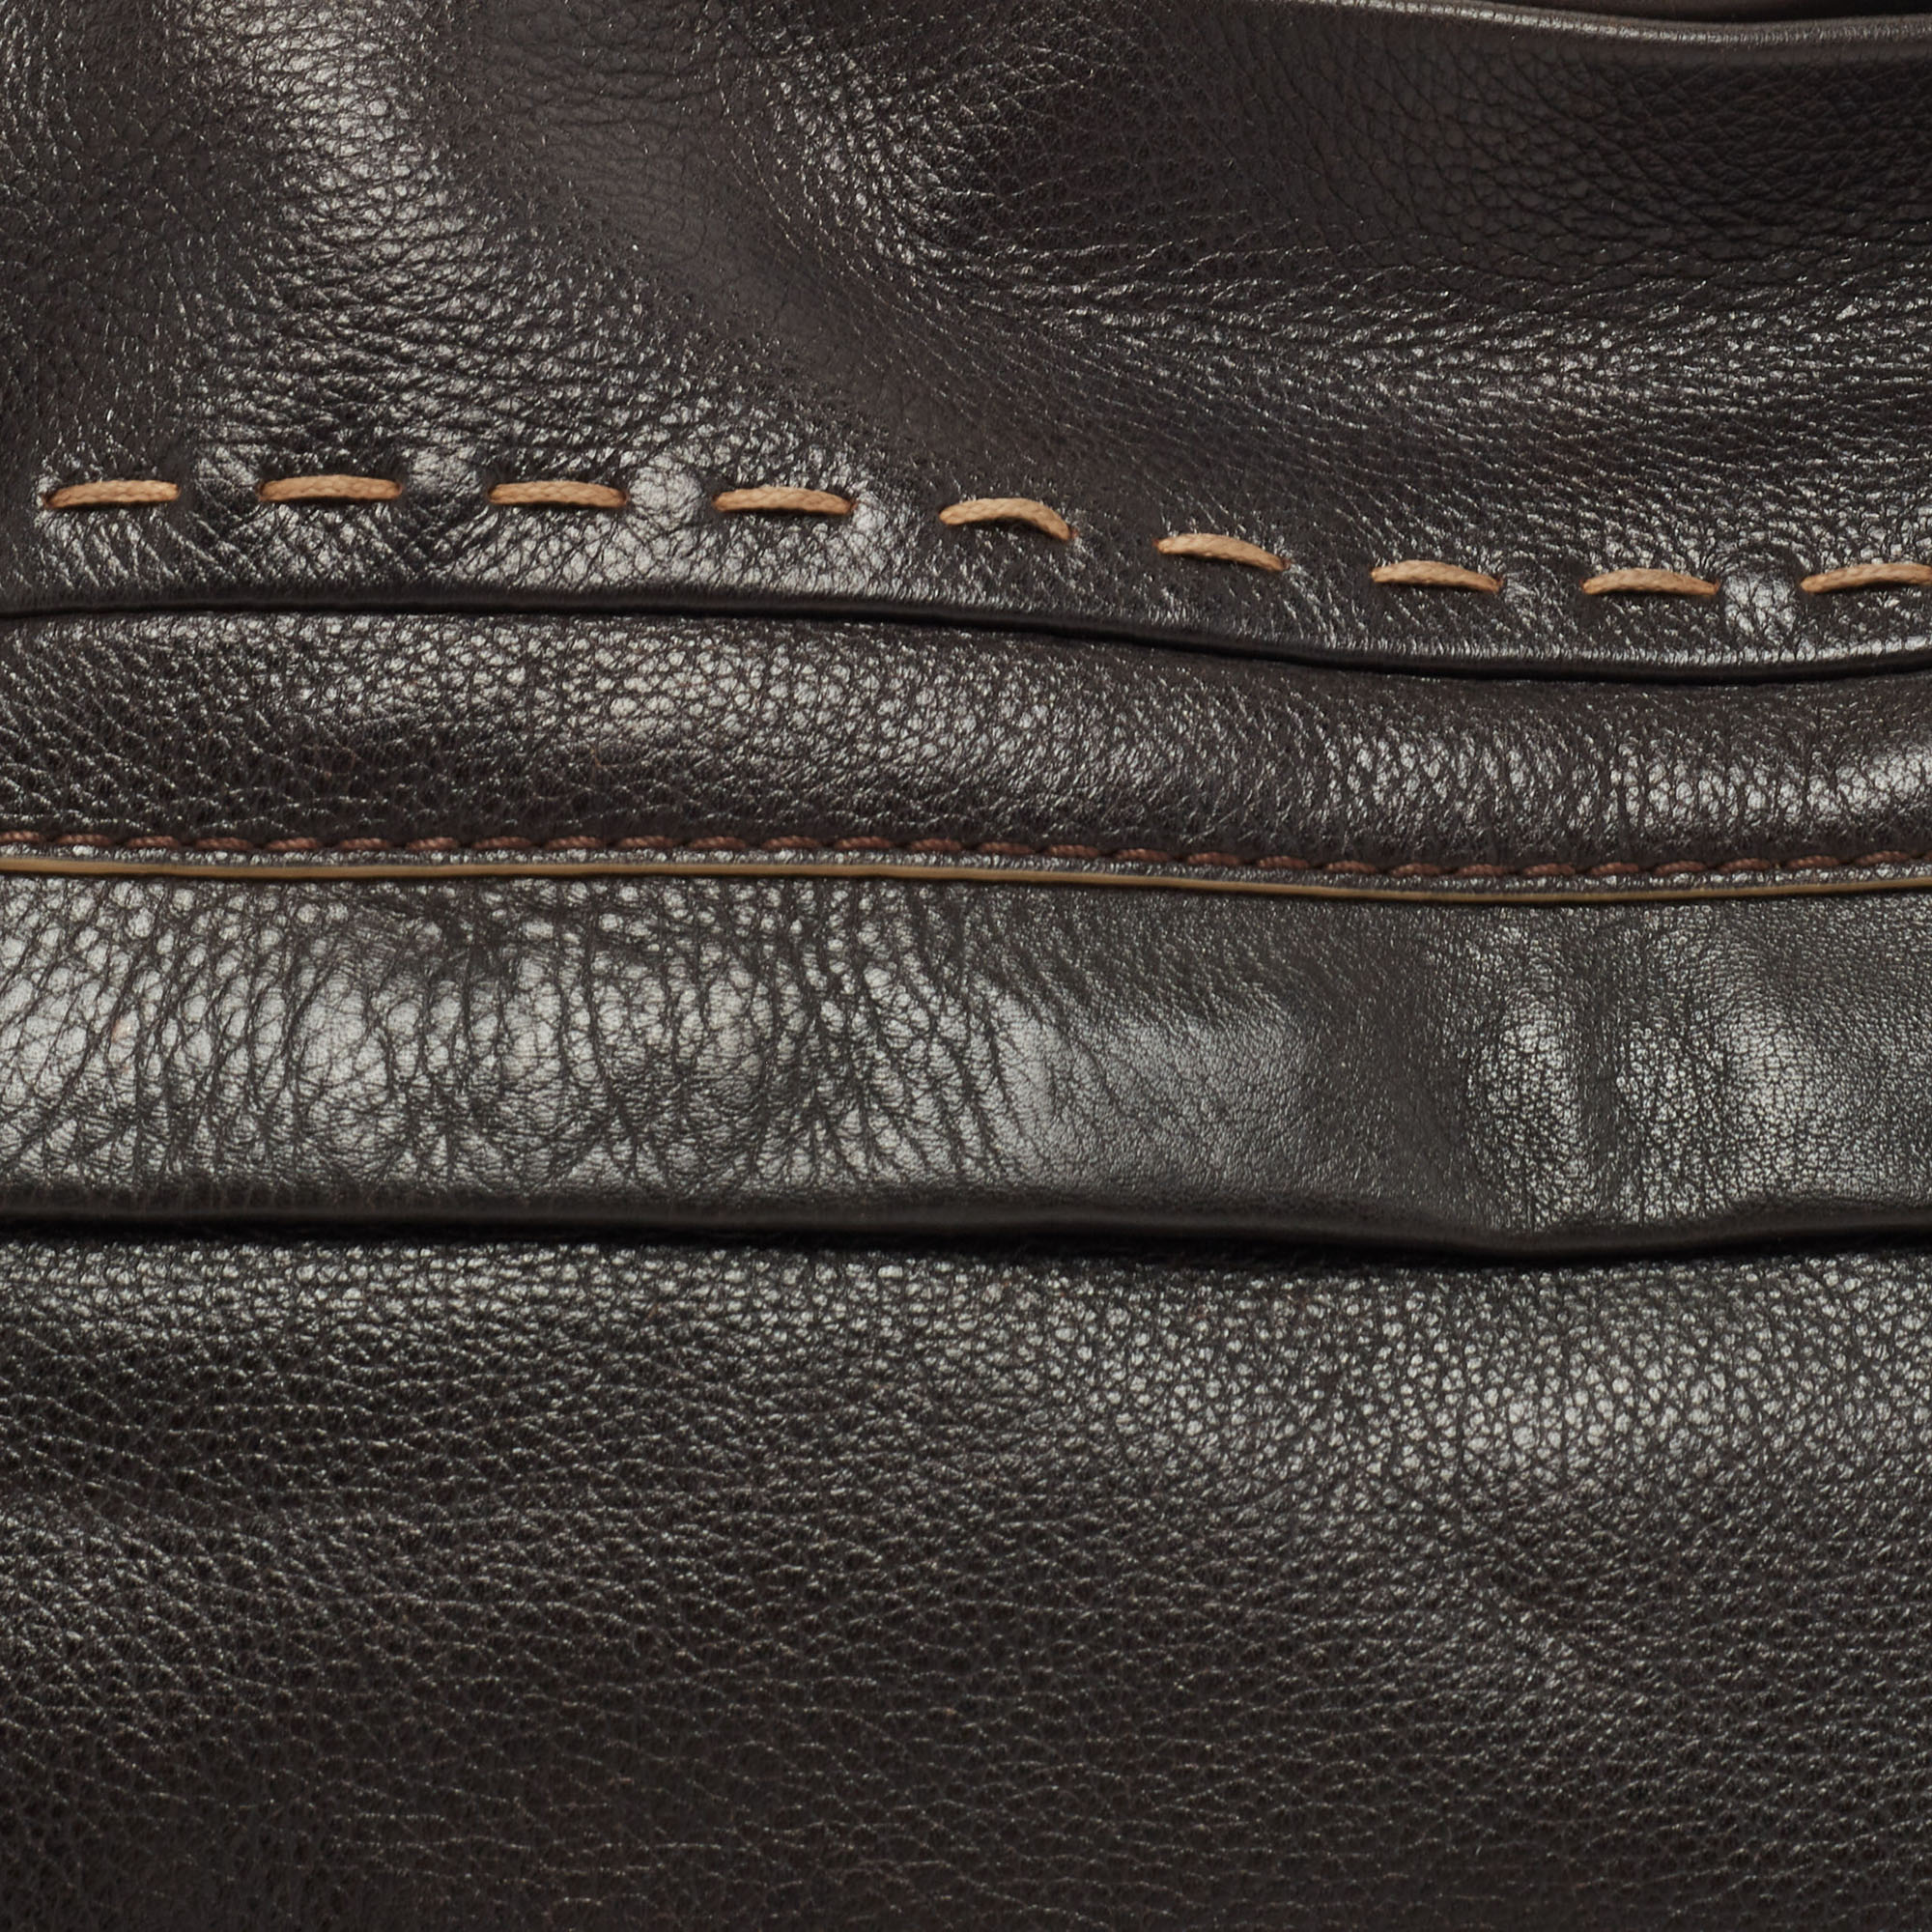 Lancel Dark Brown Wildstitch Leather Front Pocket Shoulder Bag